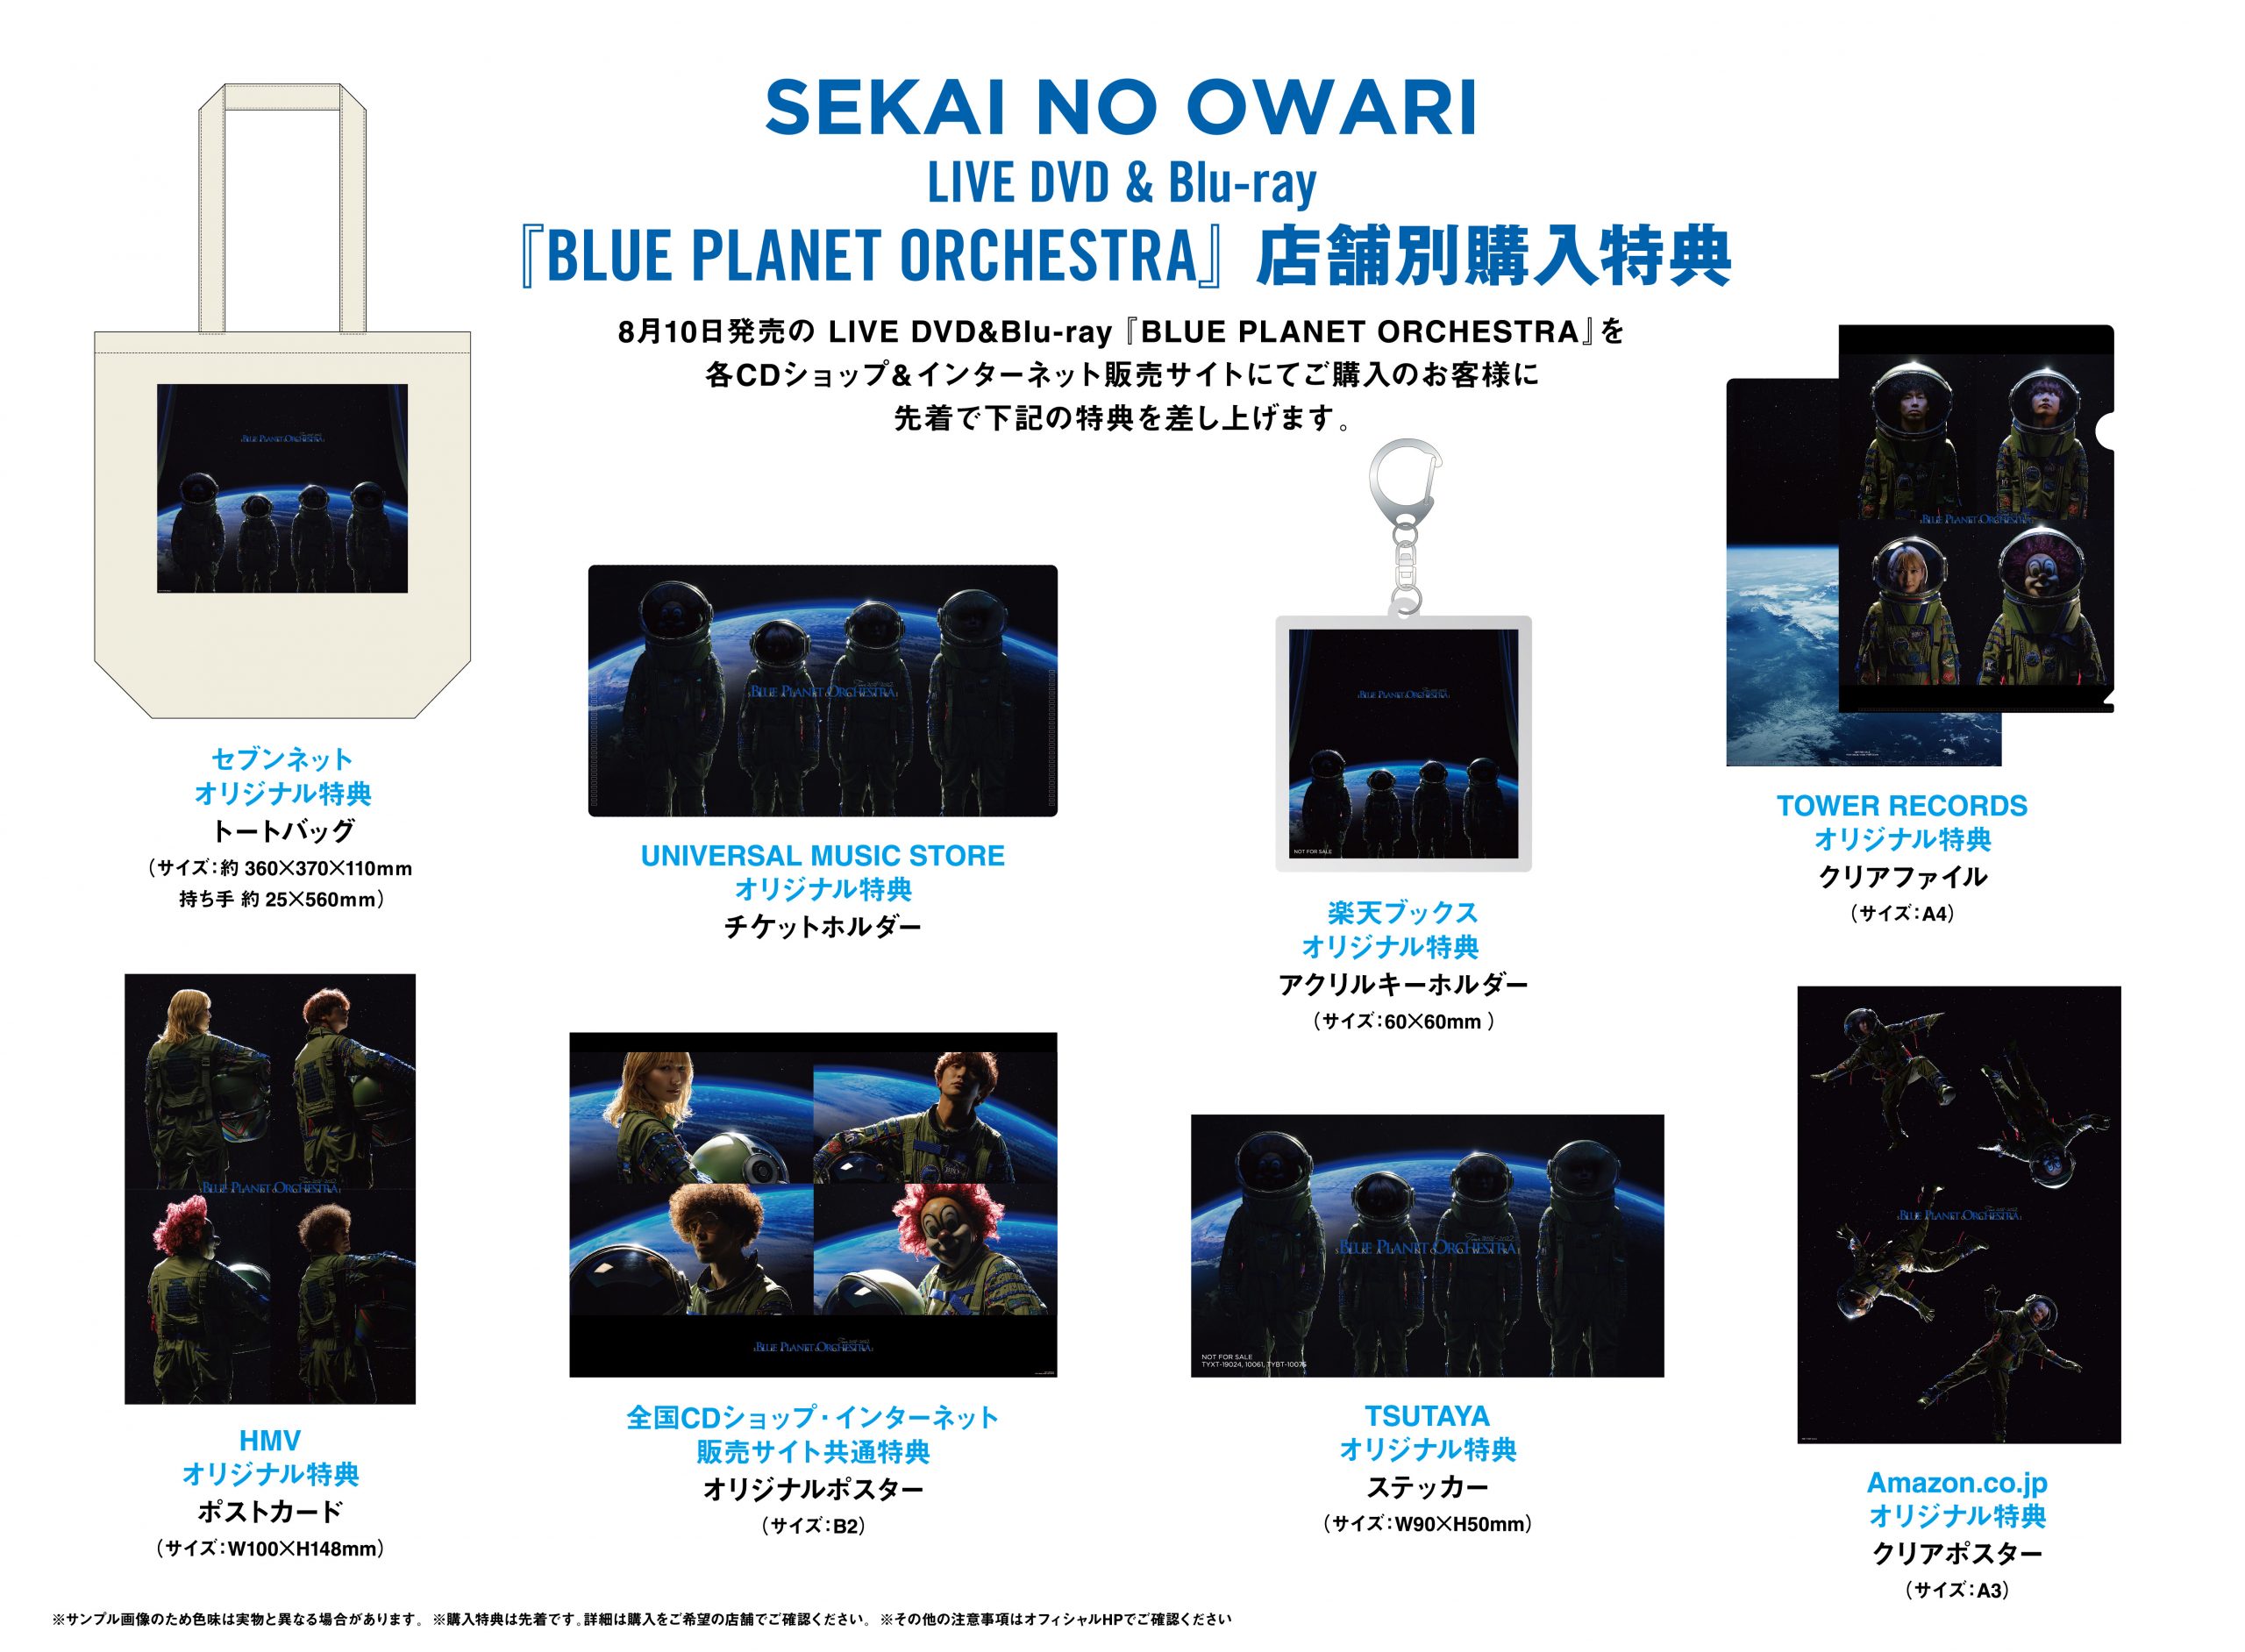 SEKAI NO OWARI LIVE DVD  Blu-ray『BLUE PLANET ORCHESTRA』購入特典決定！ - SEKAI NO  OWARI